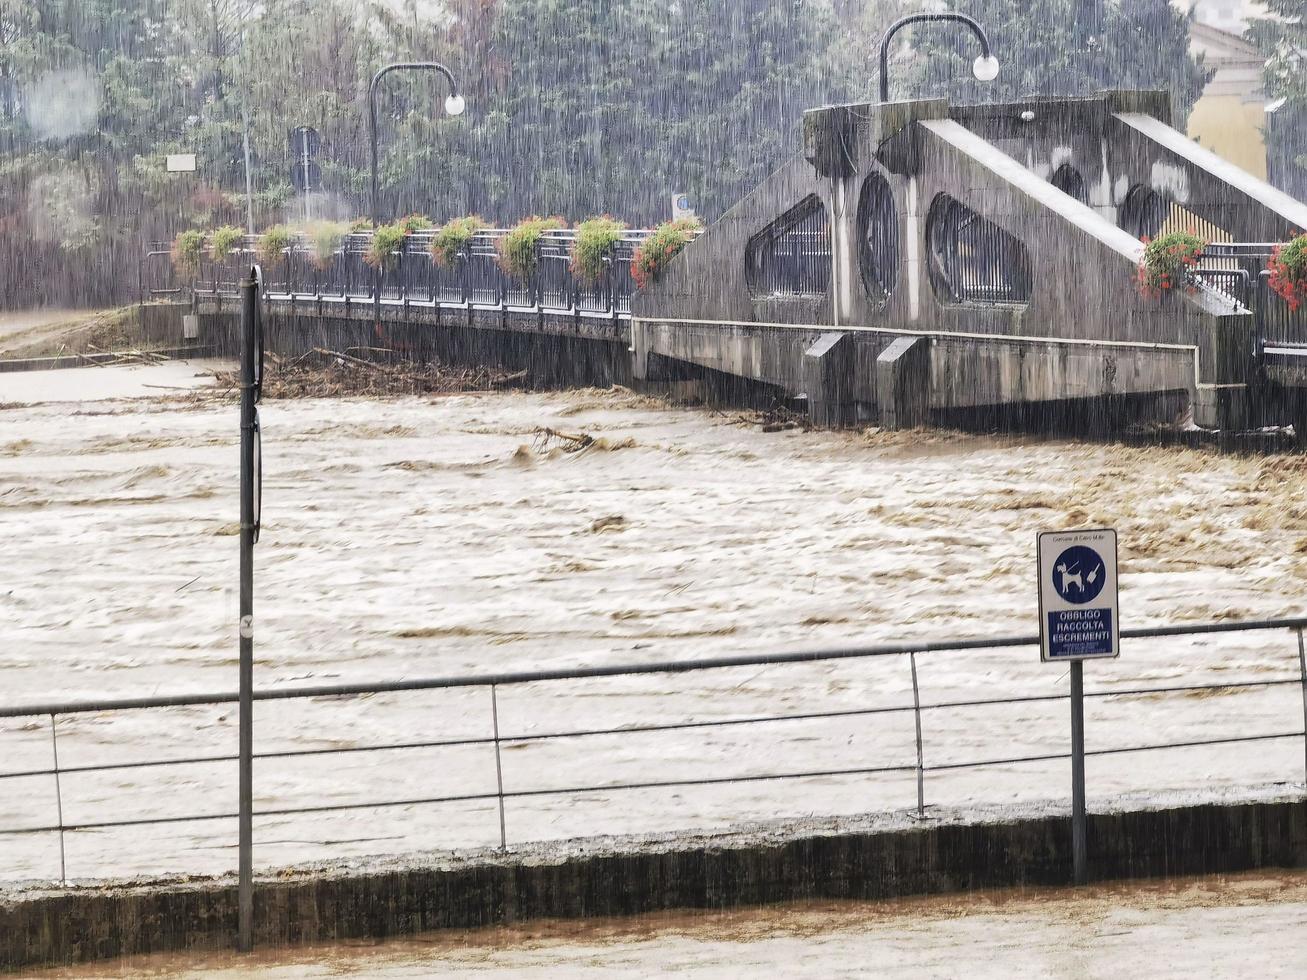 Bilder von Flüssen bei Hochwasser, Überschwemmungen und Katastrophen im Zusammenhang mit Herbstregen foto